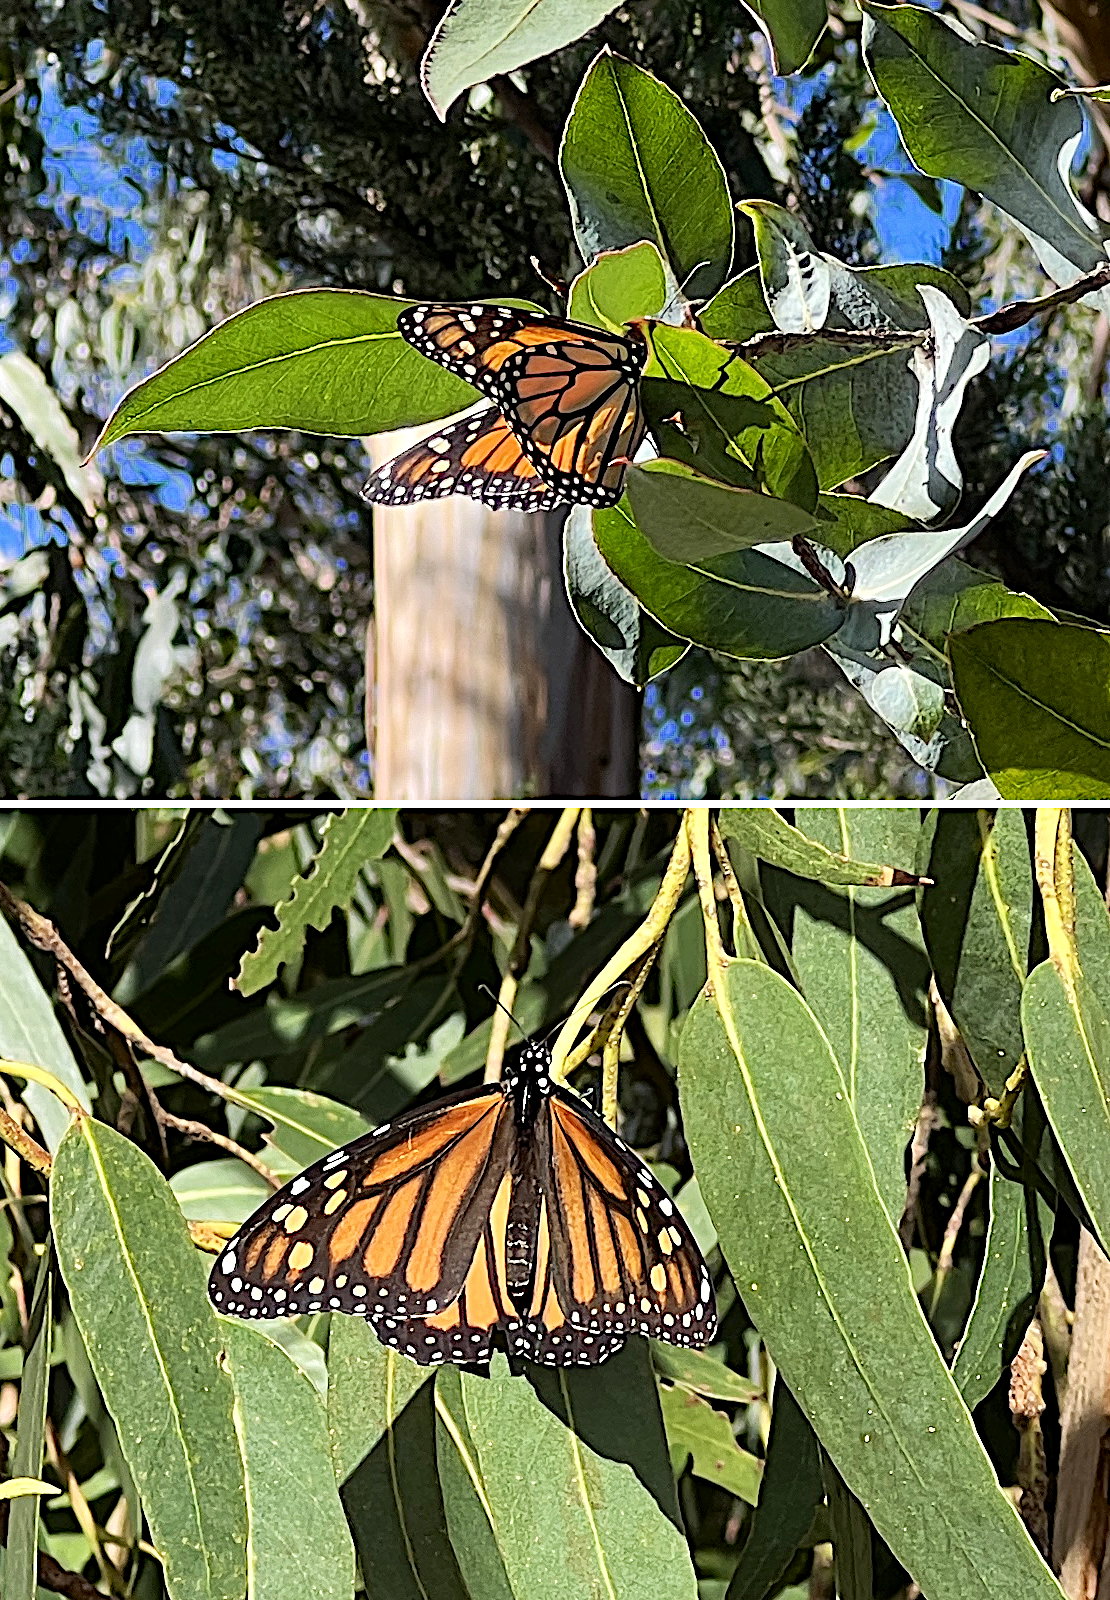 Zwei Photos eines Monarch-Falters zusammenmontiert. Die Falter haben eine orange Grundfarbe und sind mit schwarzen und weissen Zeichnungen gebändert.